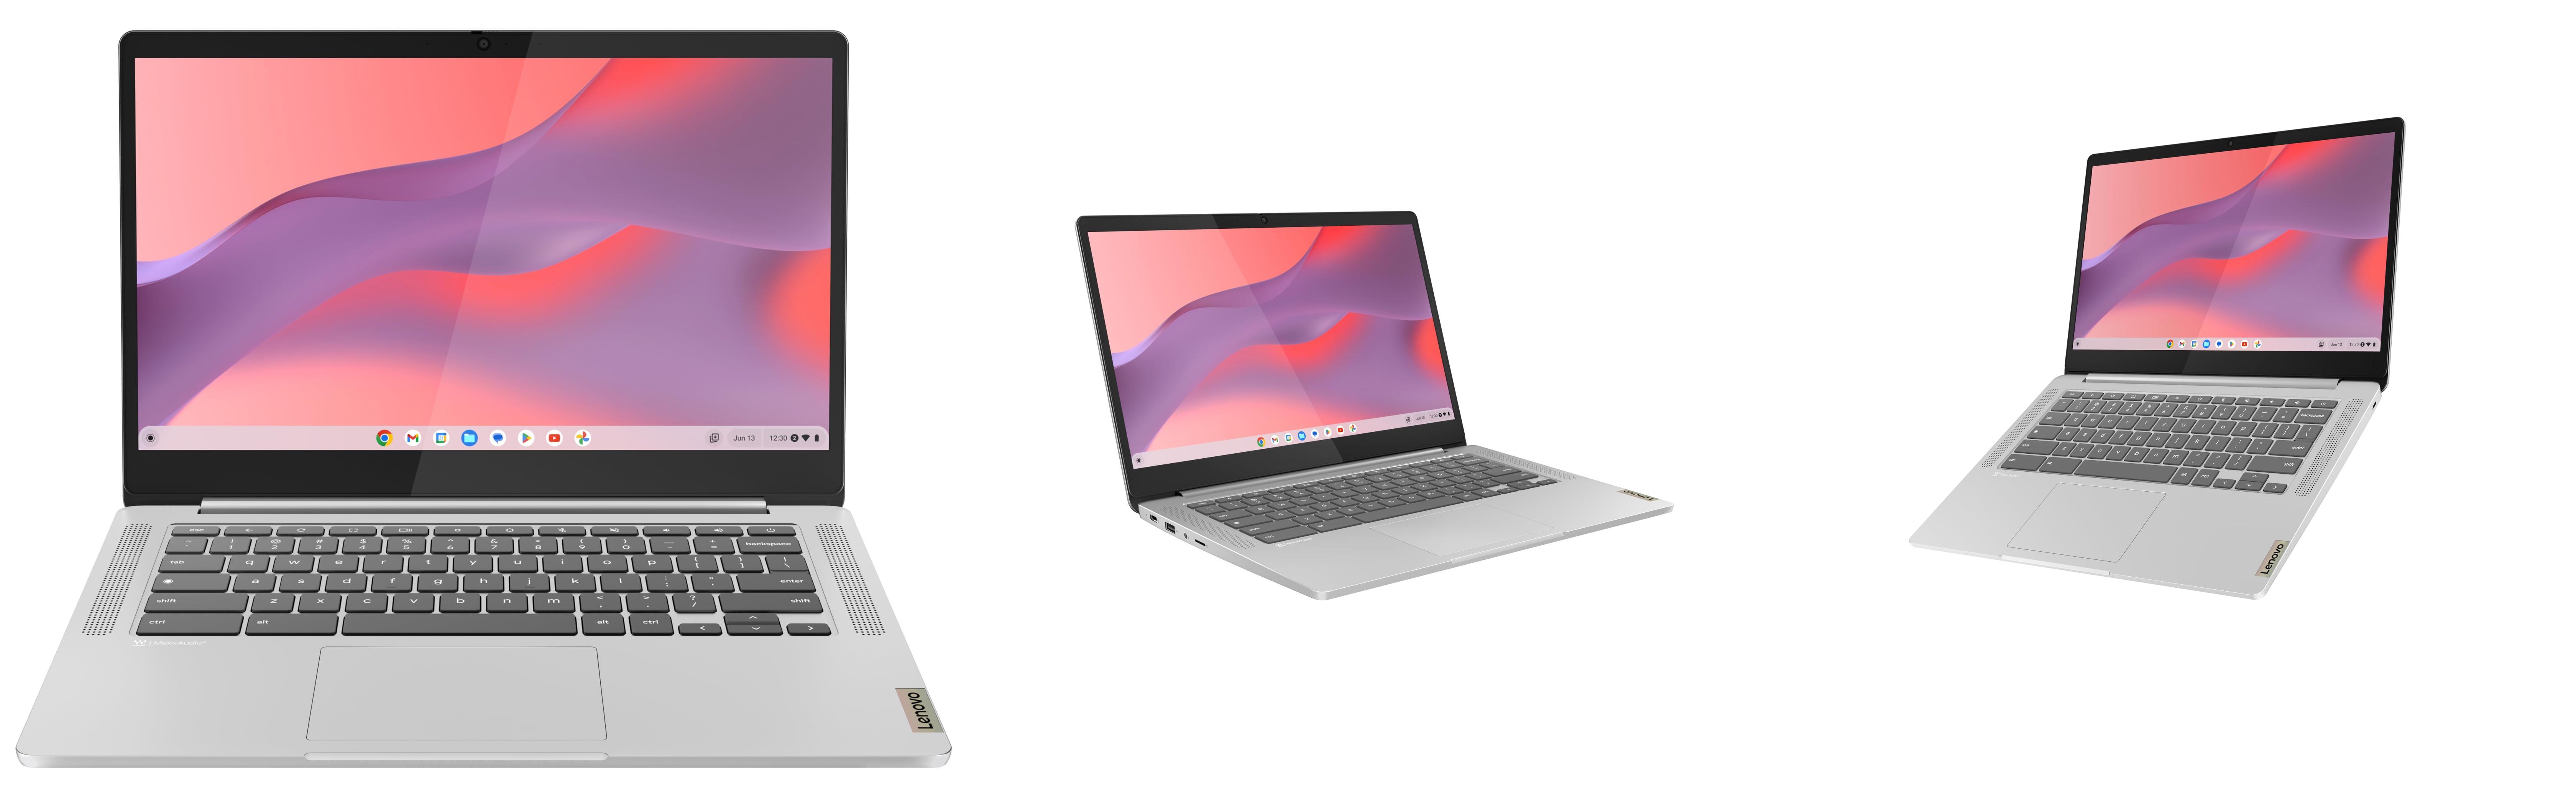 Lenovo IdeaPad Slim 3 Chrome Gen 8 - El portátil perfecto para tus necesidades informáticas